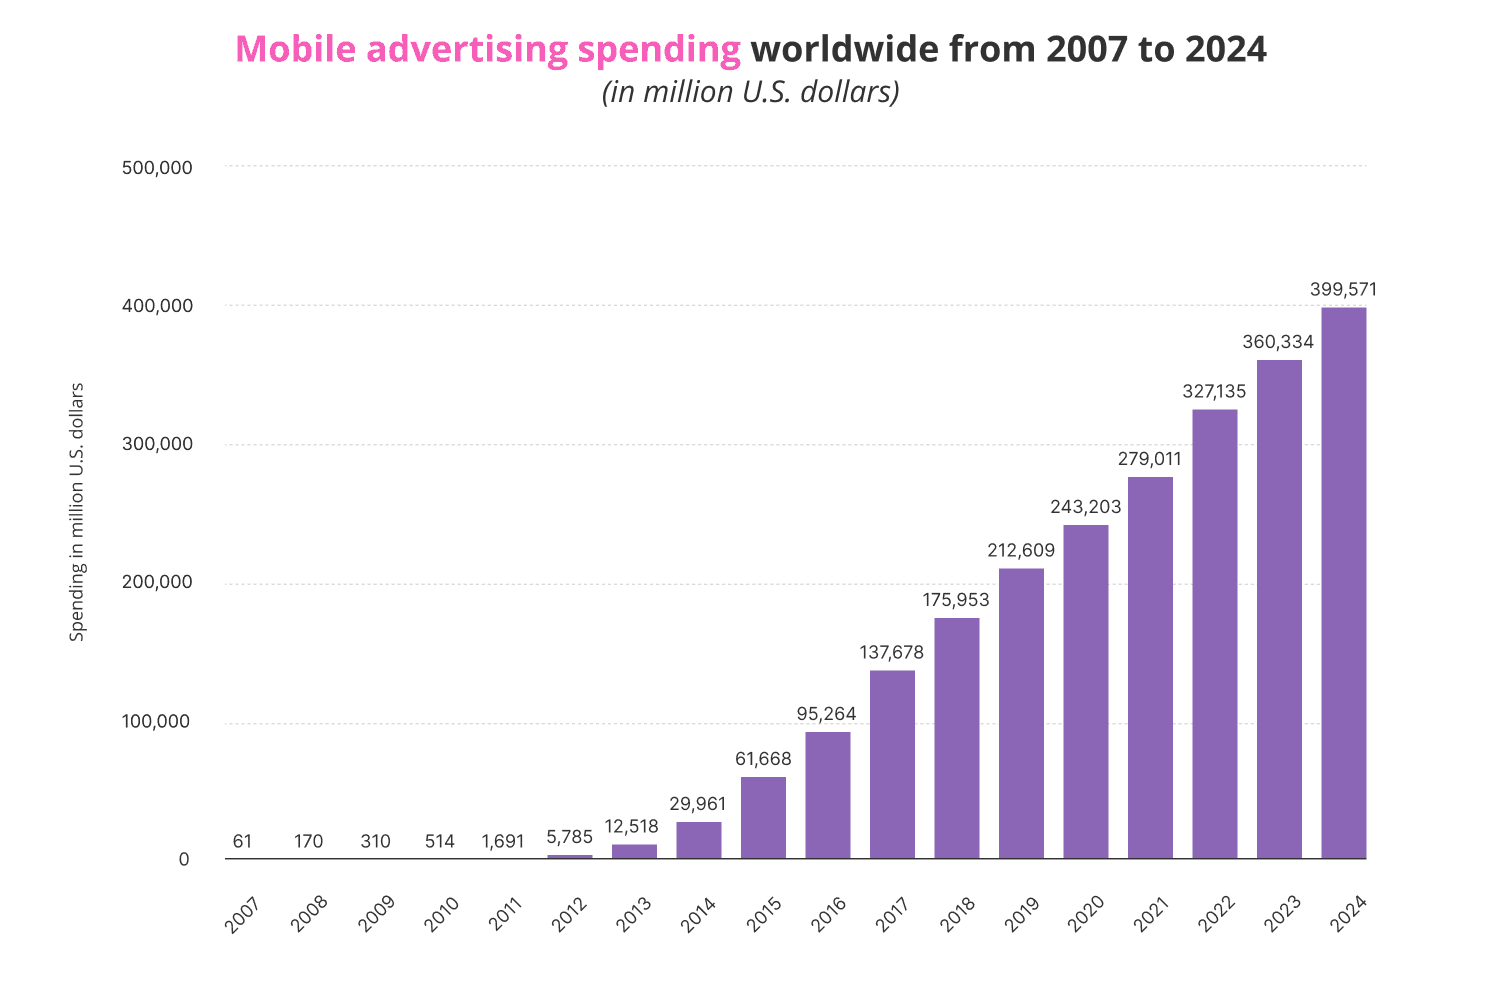 Global mobile advertising spending